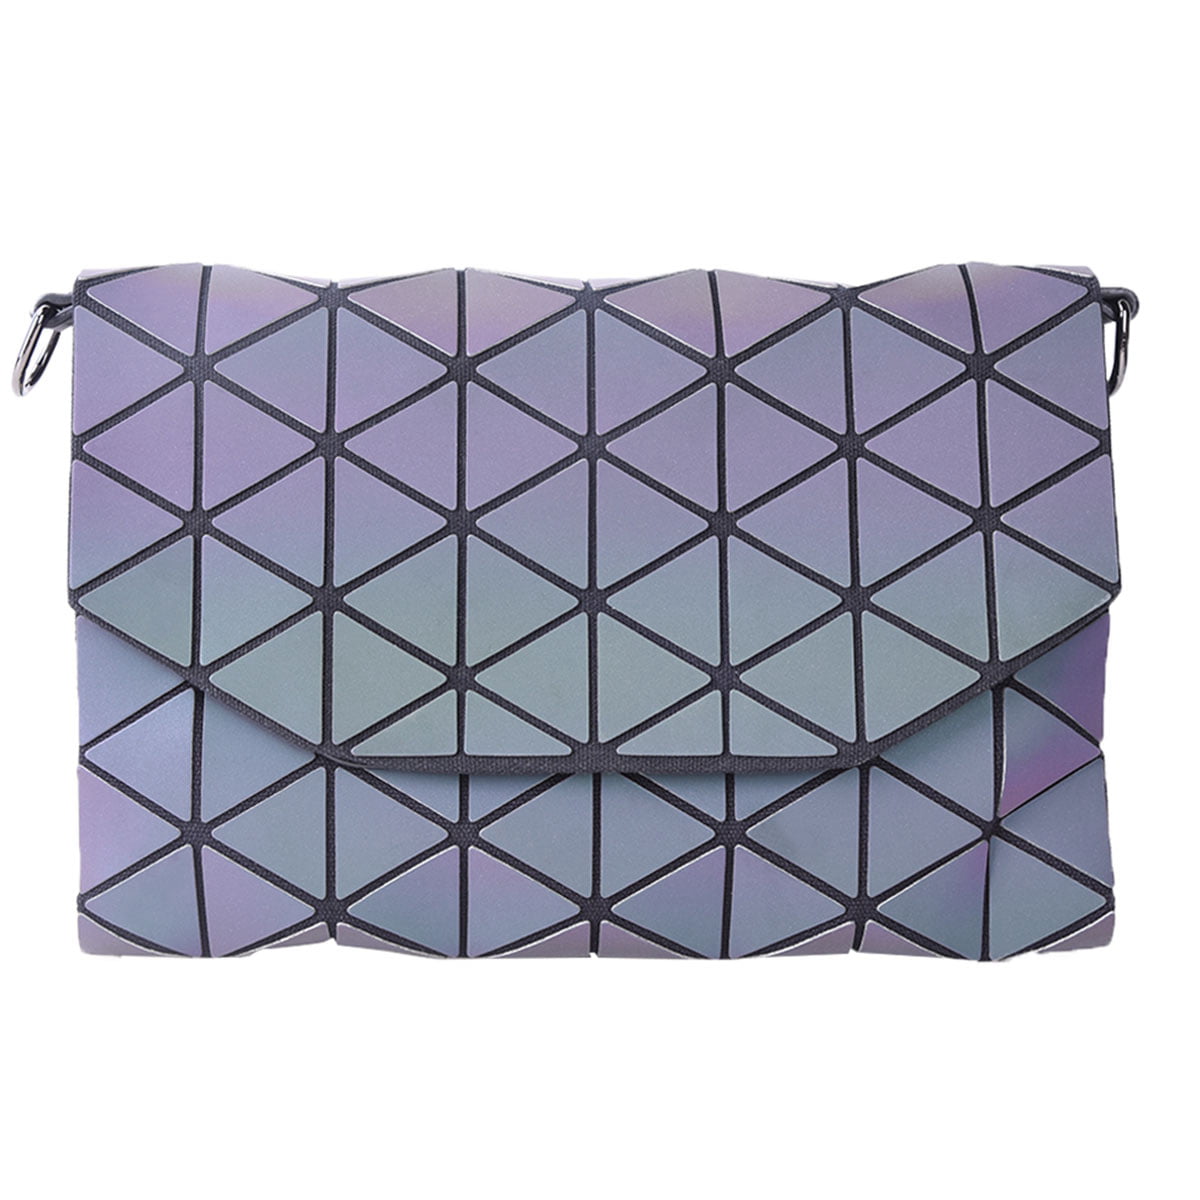 Luminesk Star Handbag | Handbag, Purse styles, Purses